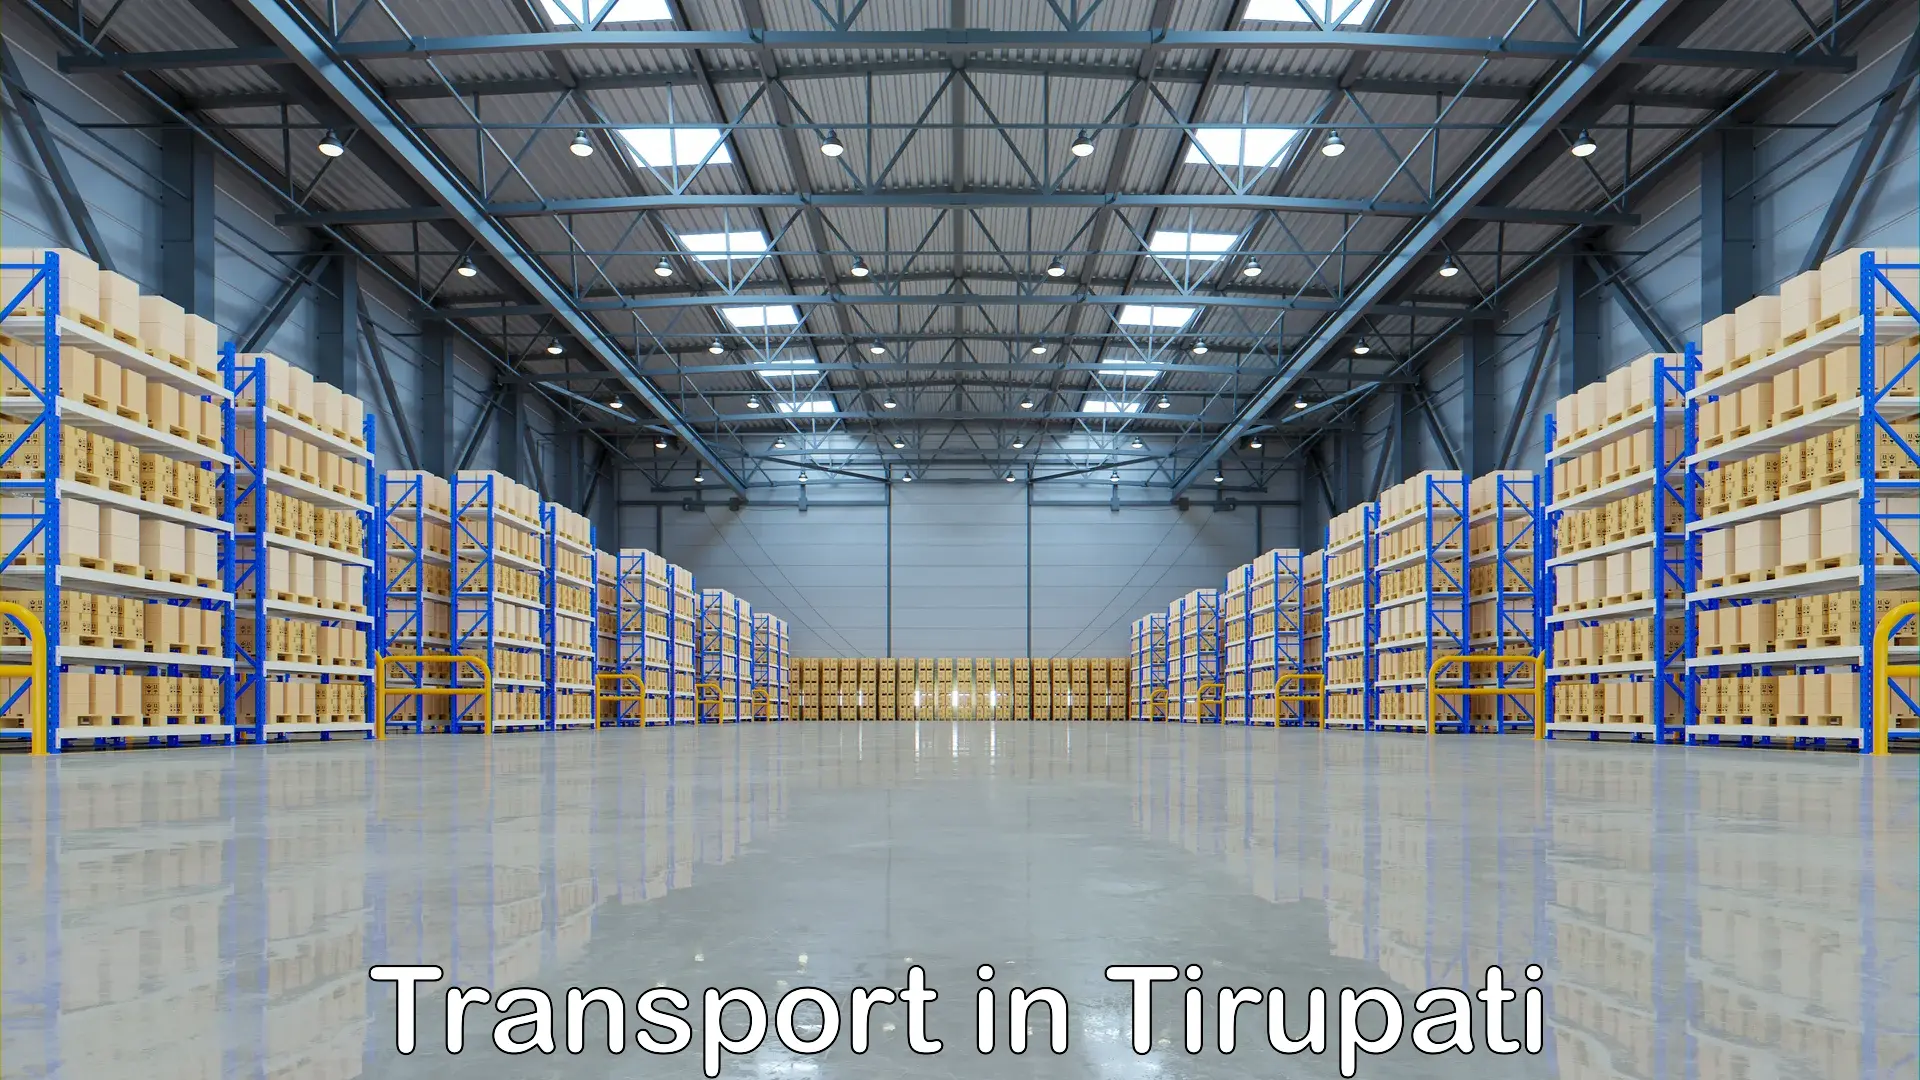 Furniture transport service in Tirupati